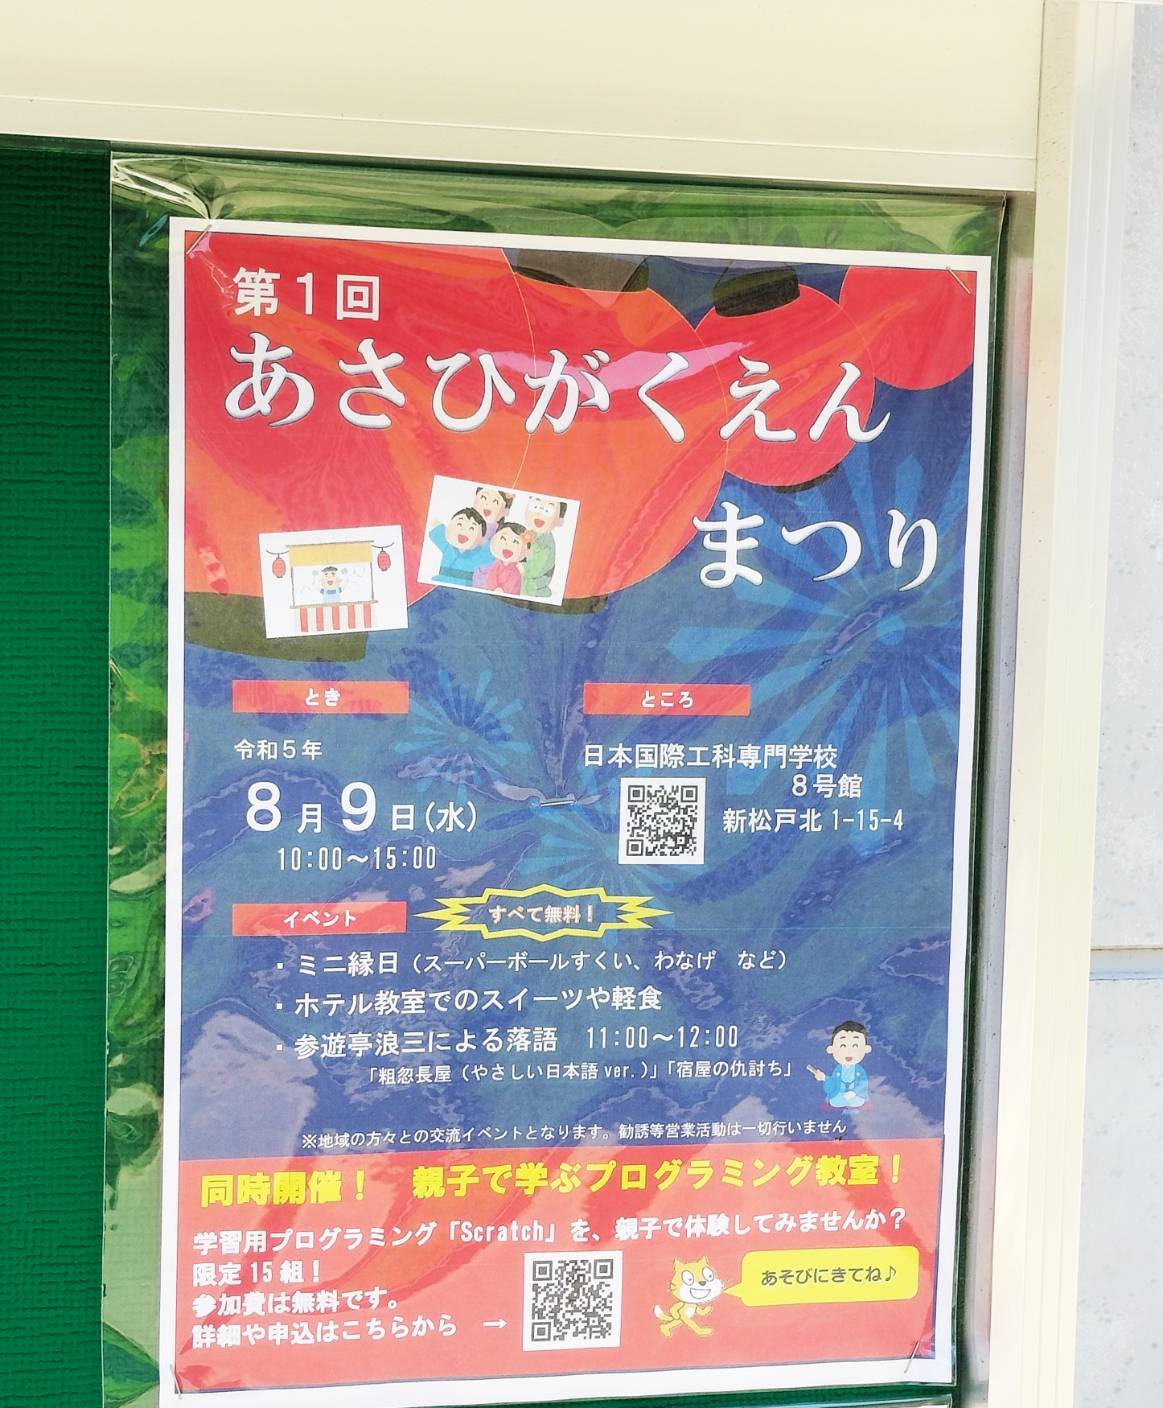 あさひがくえんまつり新松戸北夏祭り日本国際工科専門学校